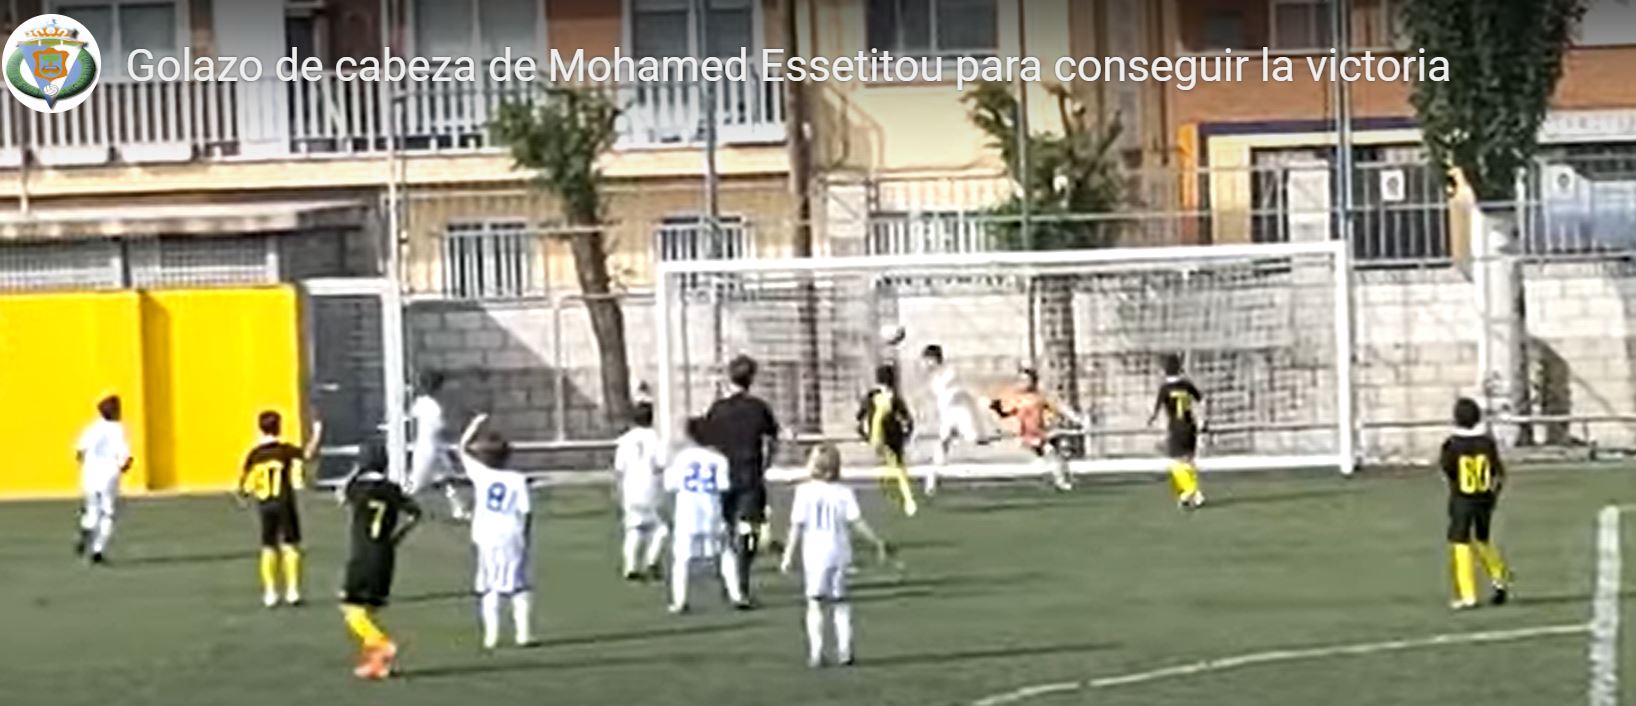 Gran gol de Mohamed Essetitou